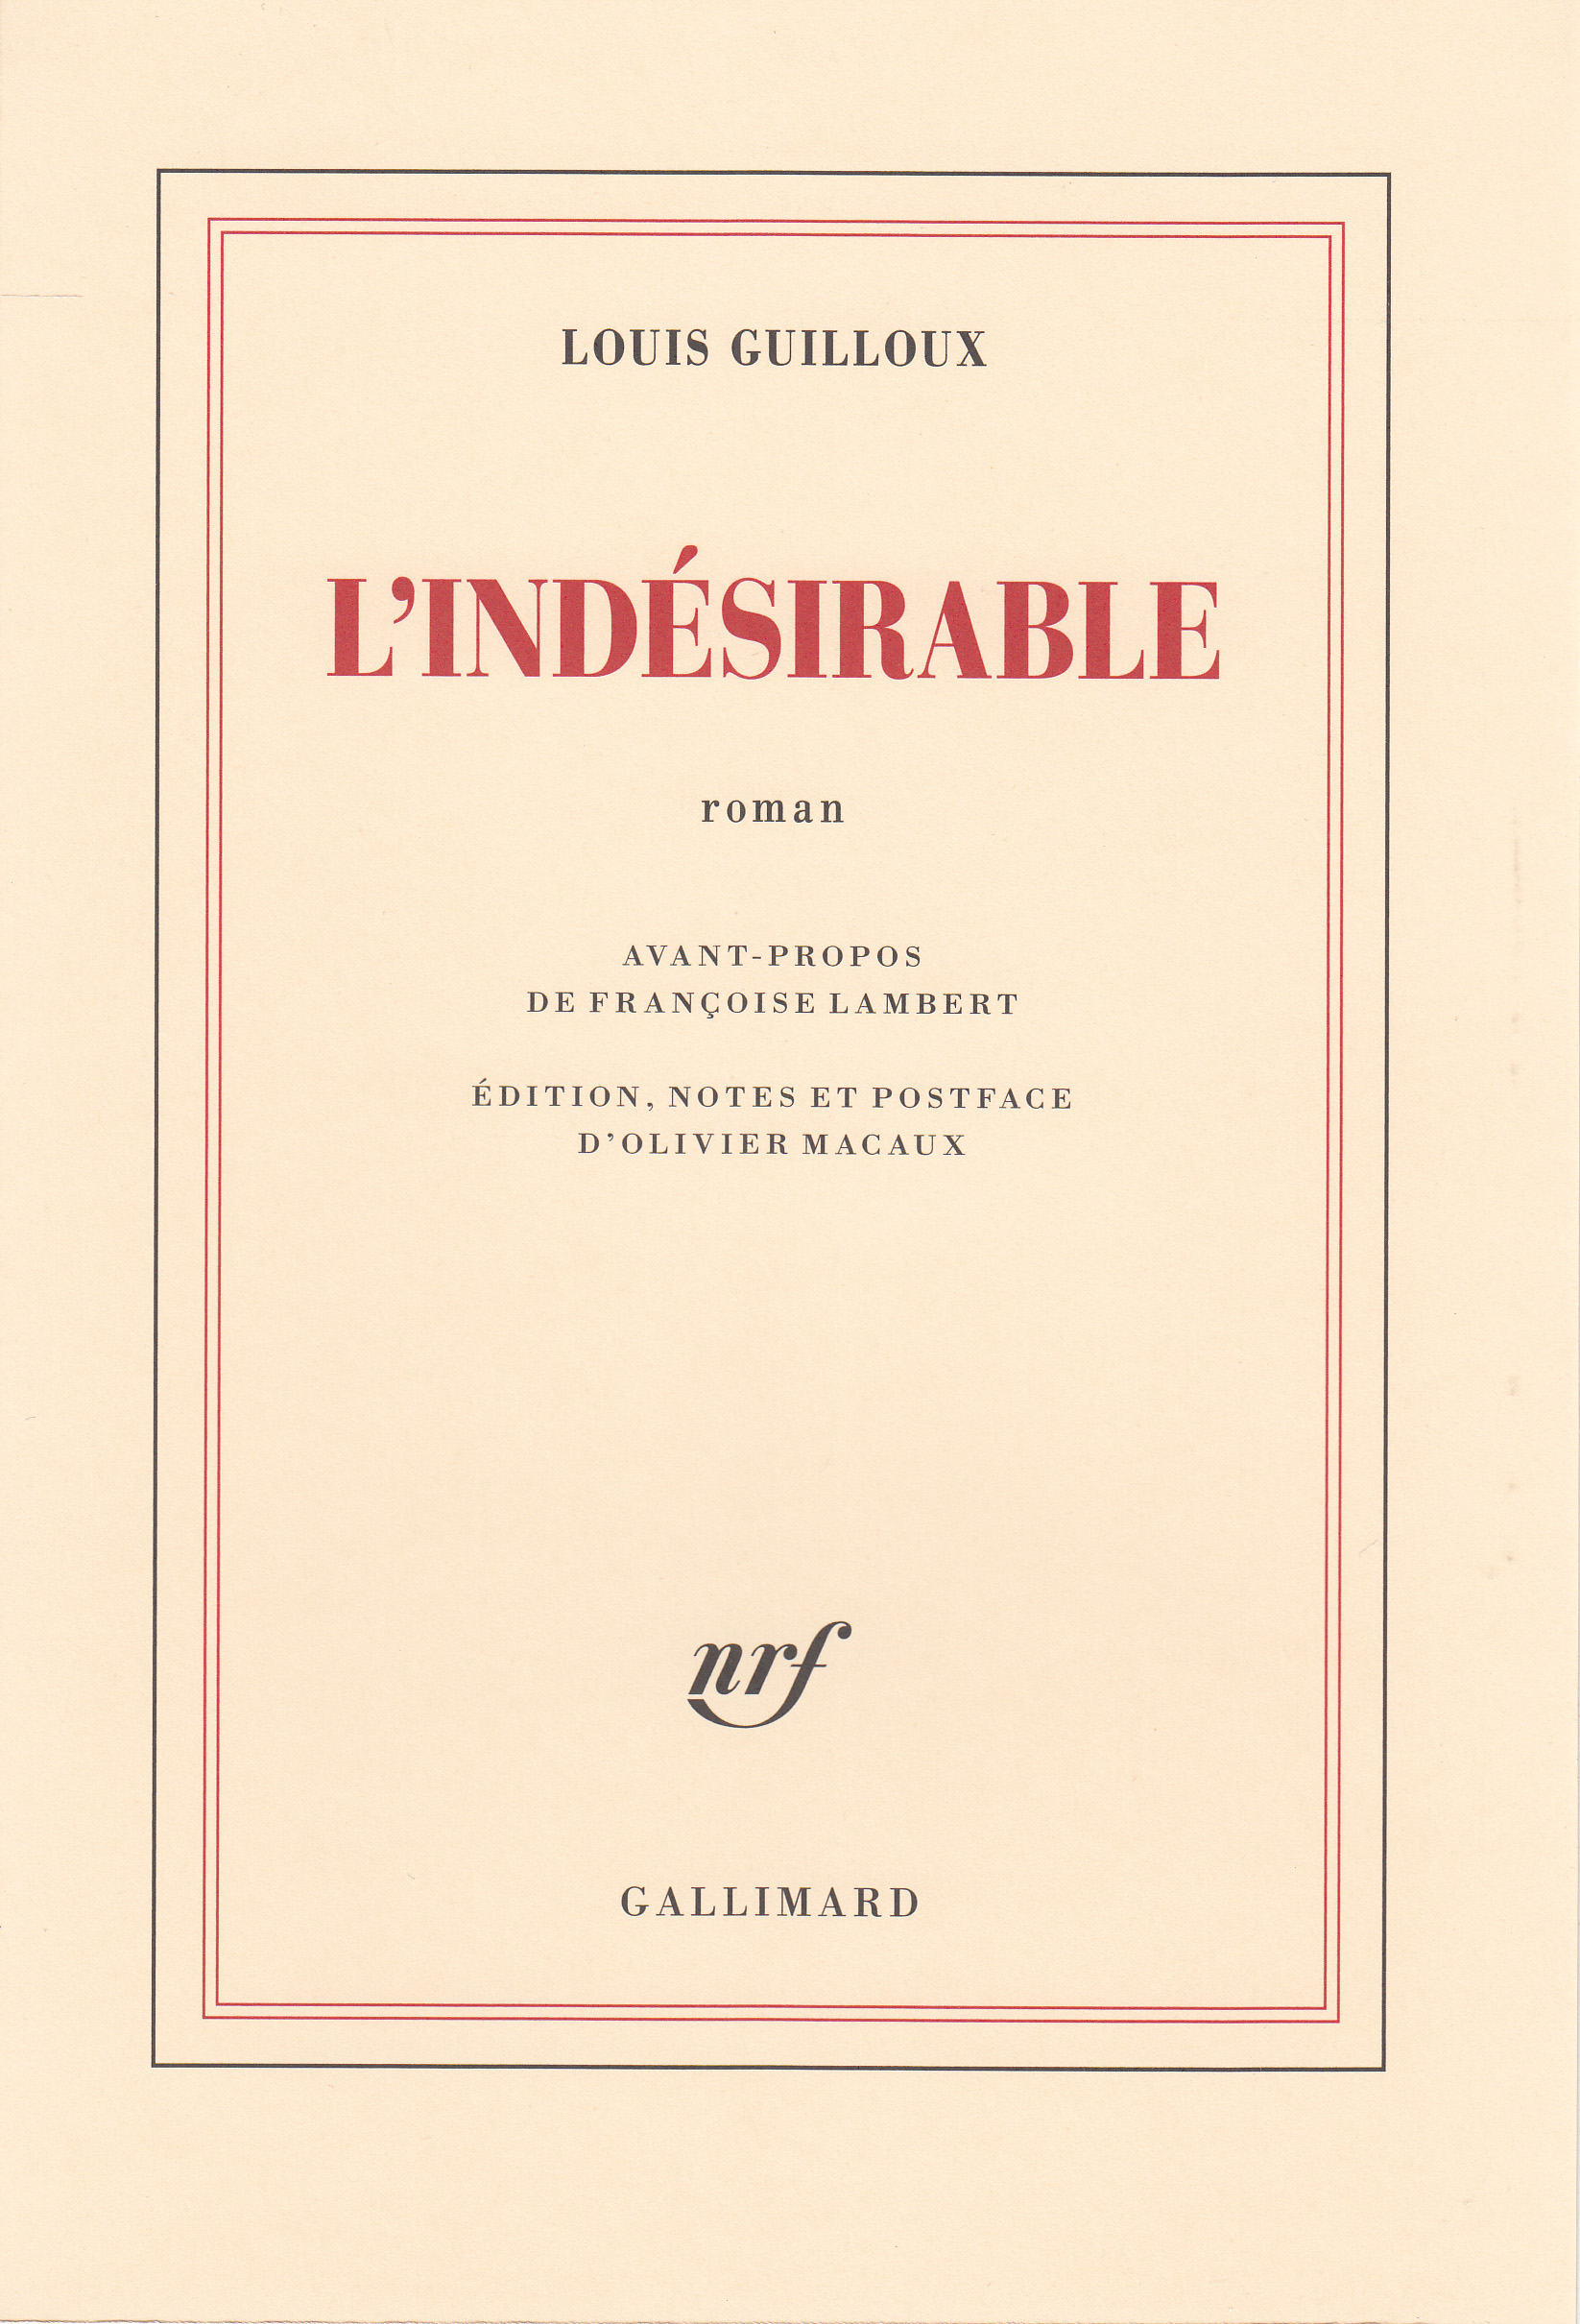 Autour de L’Indésirable, un premier roman inédit de Louis Guilloux